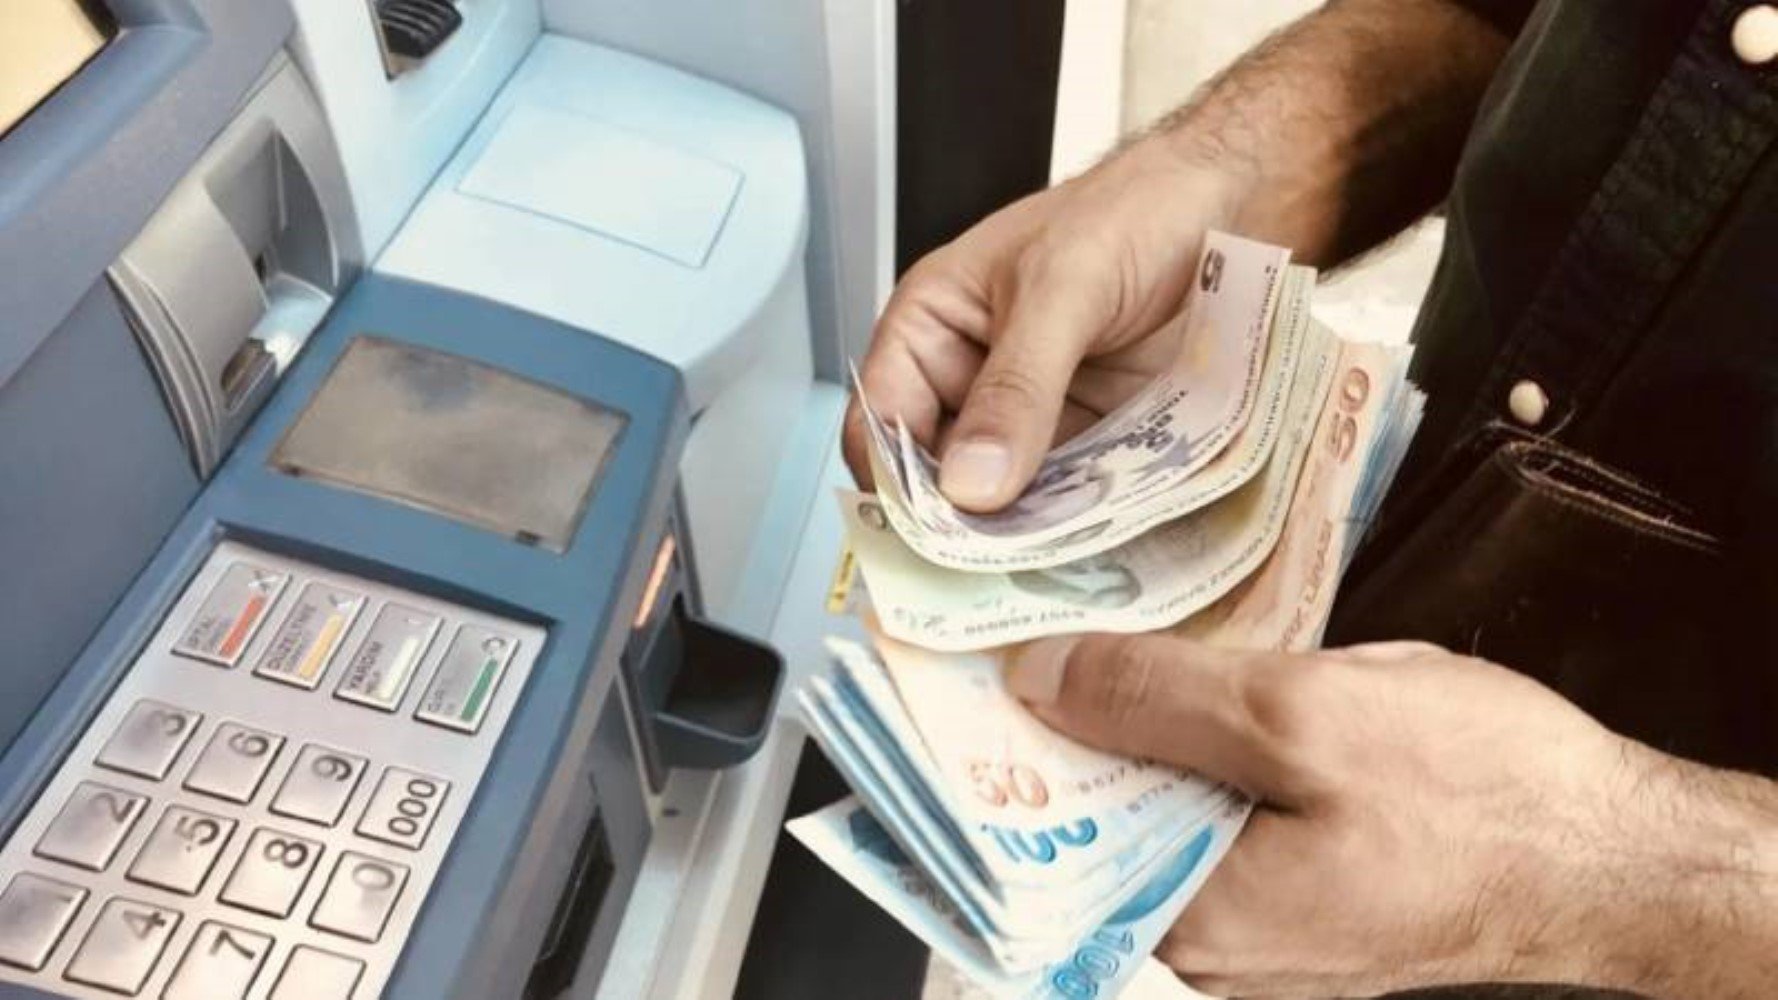 Tarih verildi: ATM’lerde yeni dönem başlıyor! Para çekme limiti değişecek